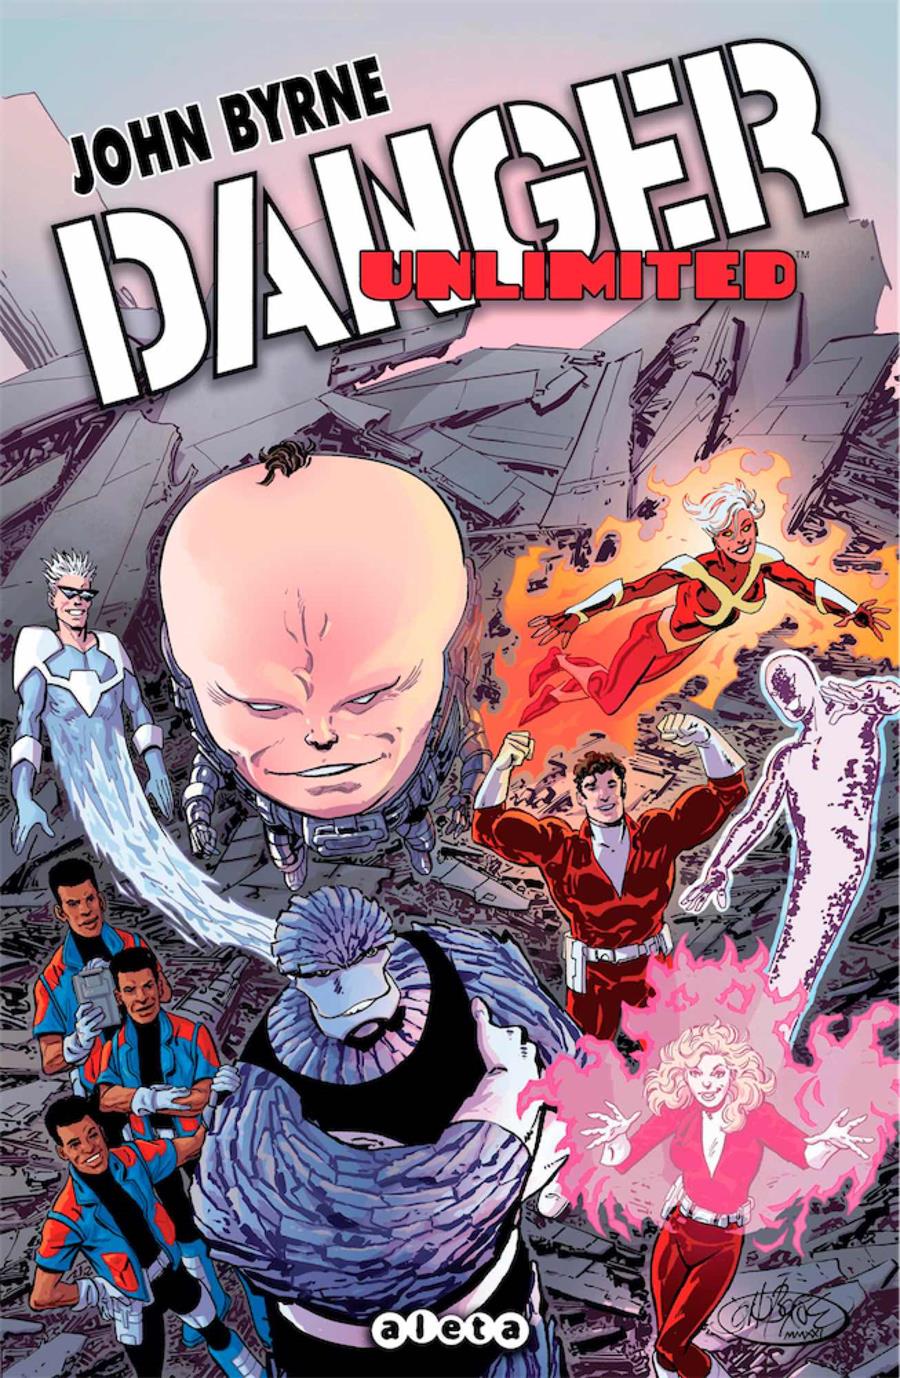 Danger unlimited | N0521-OTED17 | John Byrne | Terra de Còmic - Tu tienda de cómics online especializada en cómics, manga y merchandising